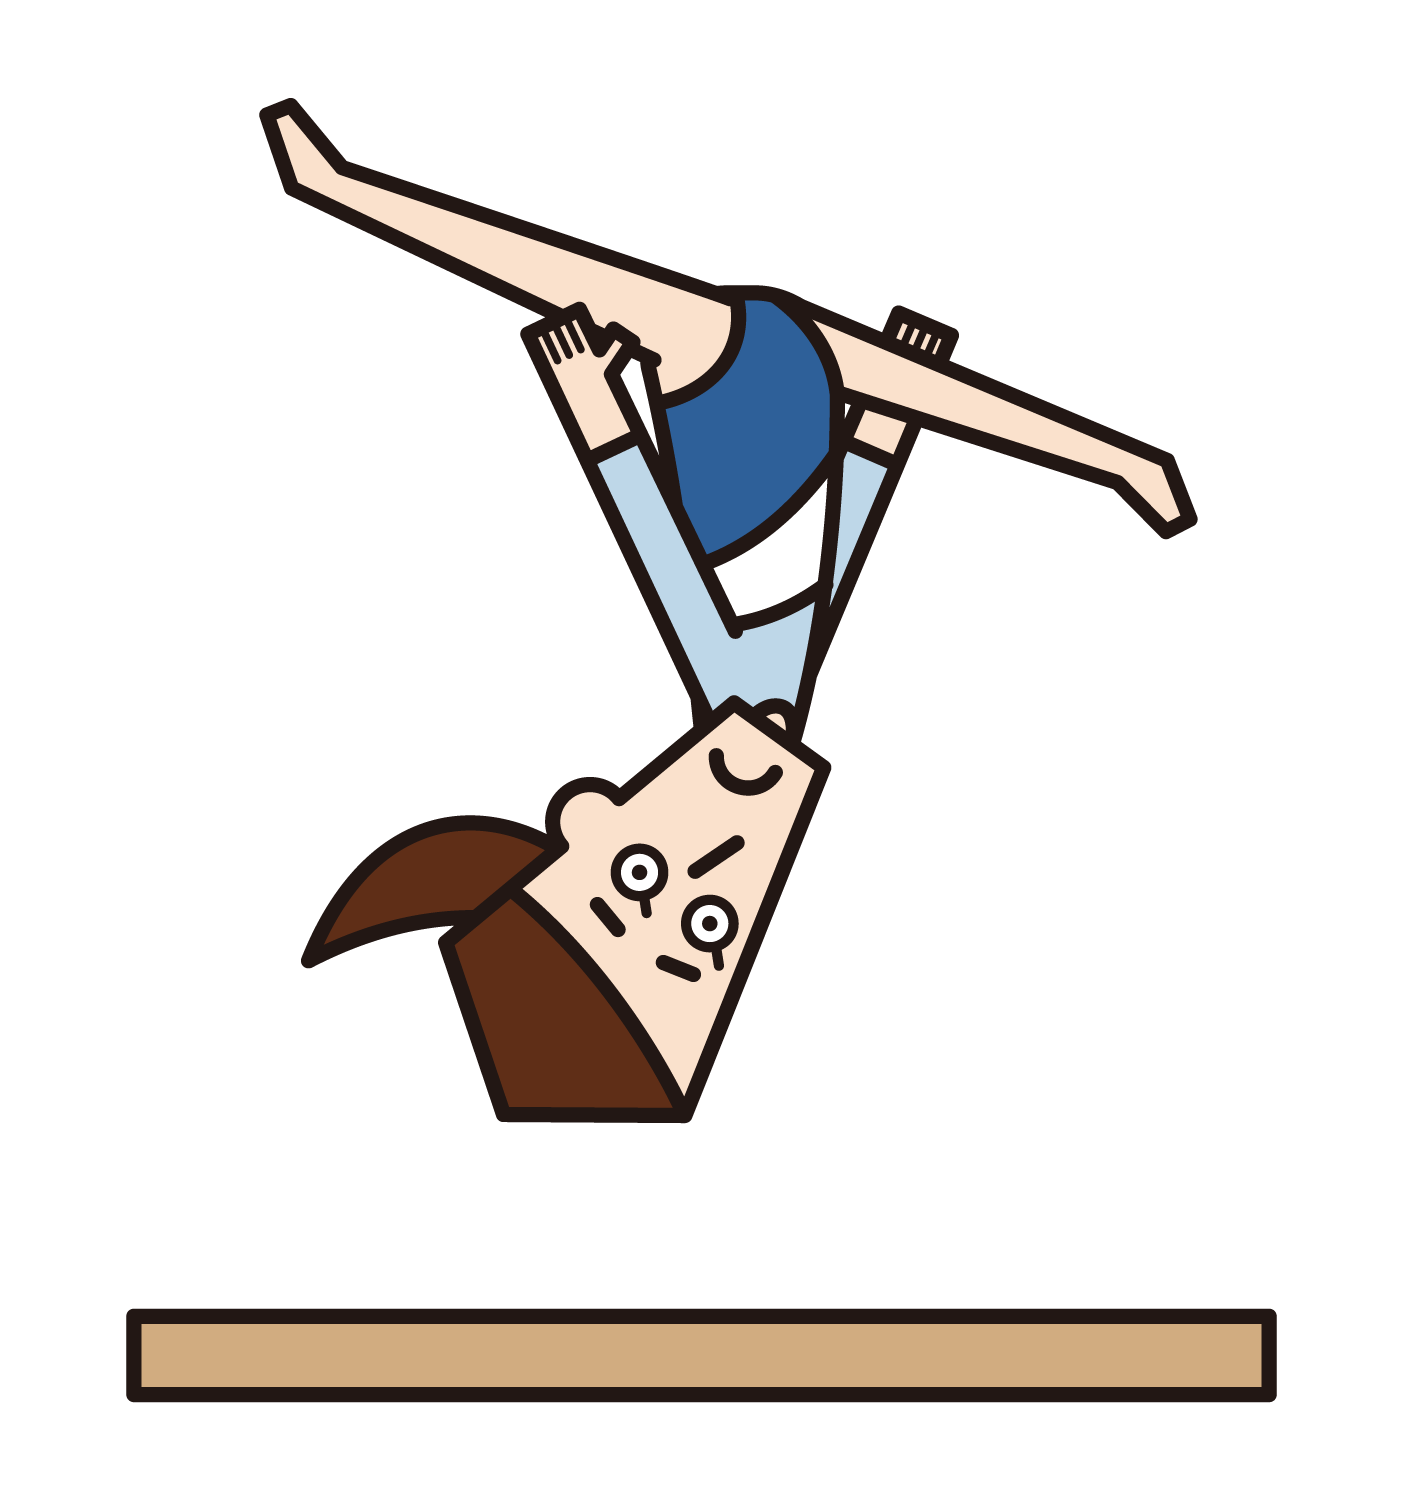 體操運動員（男性）用跳馬在空中扭曲的插圖